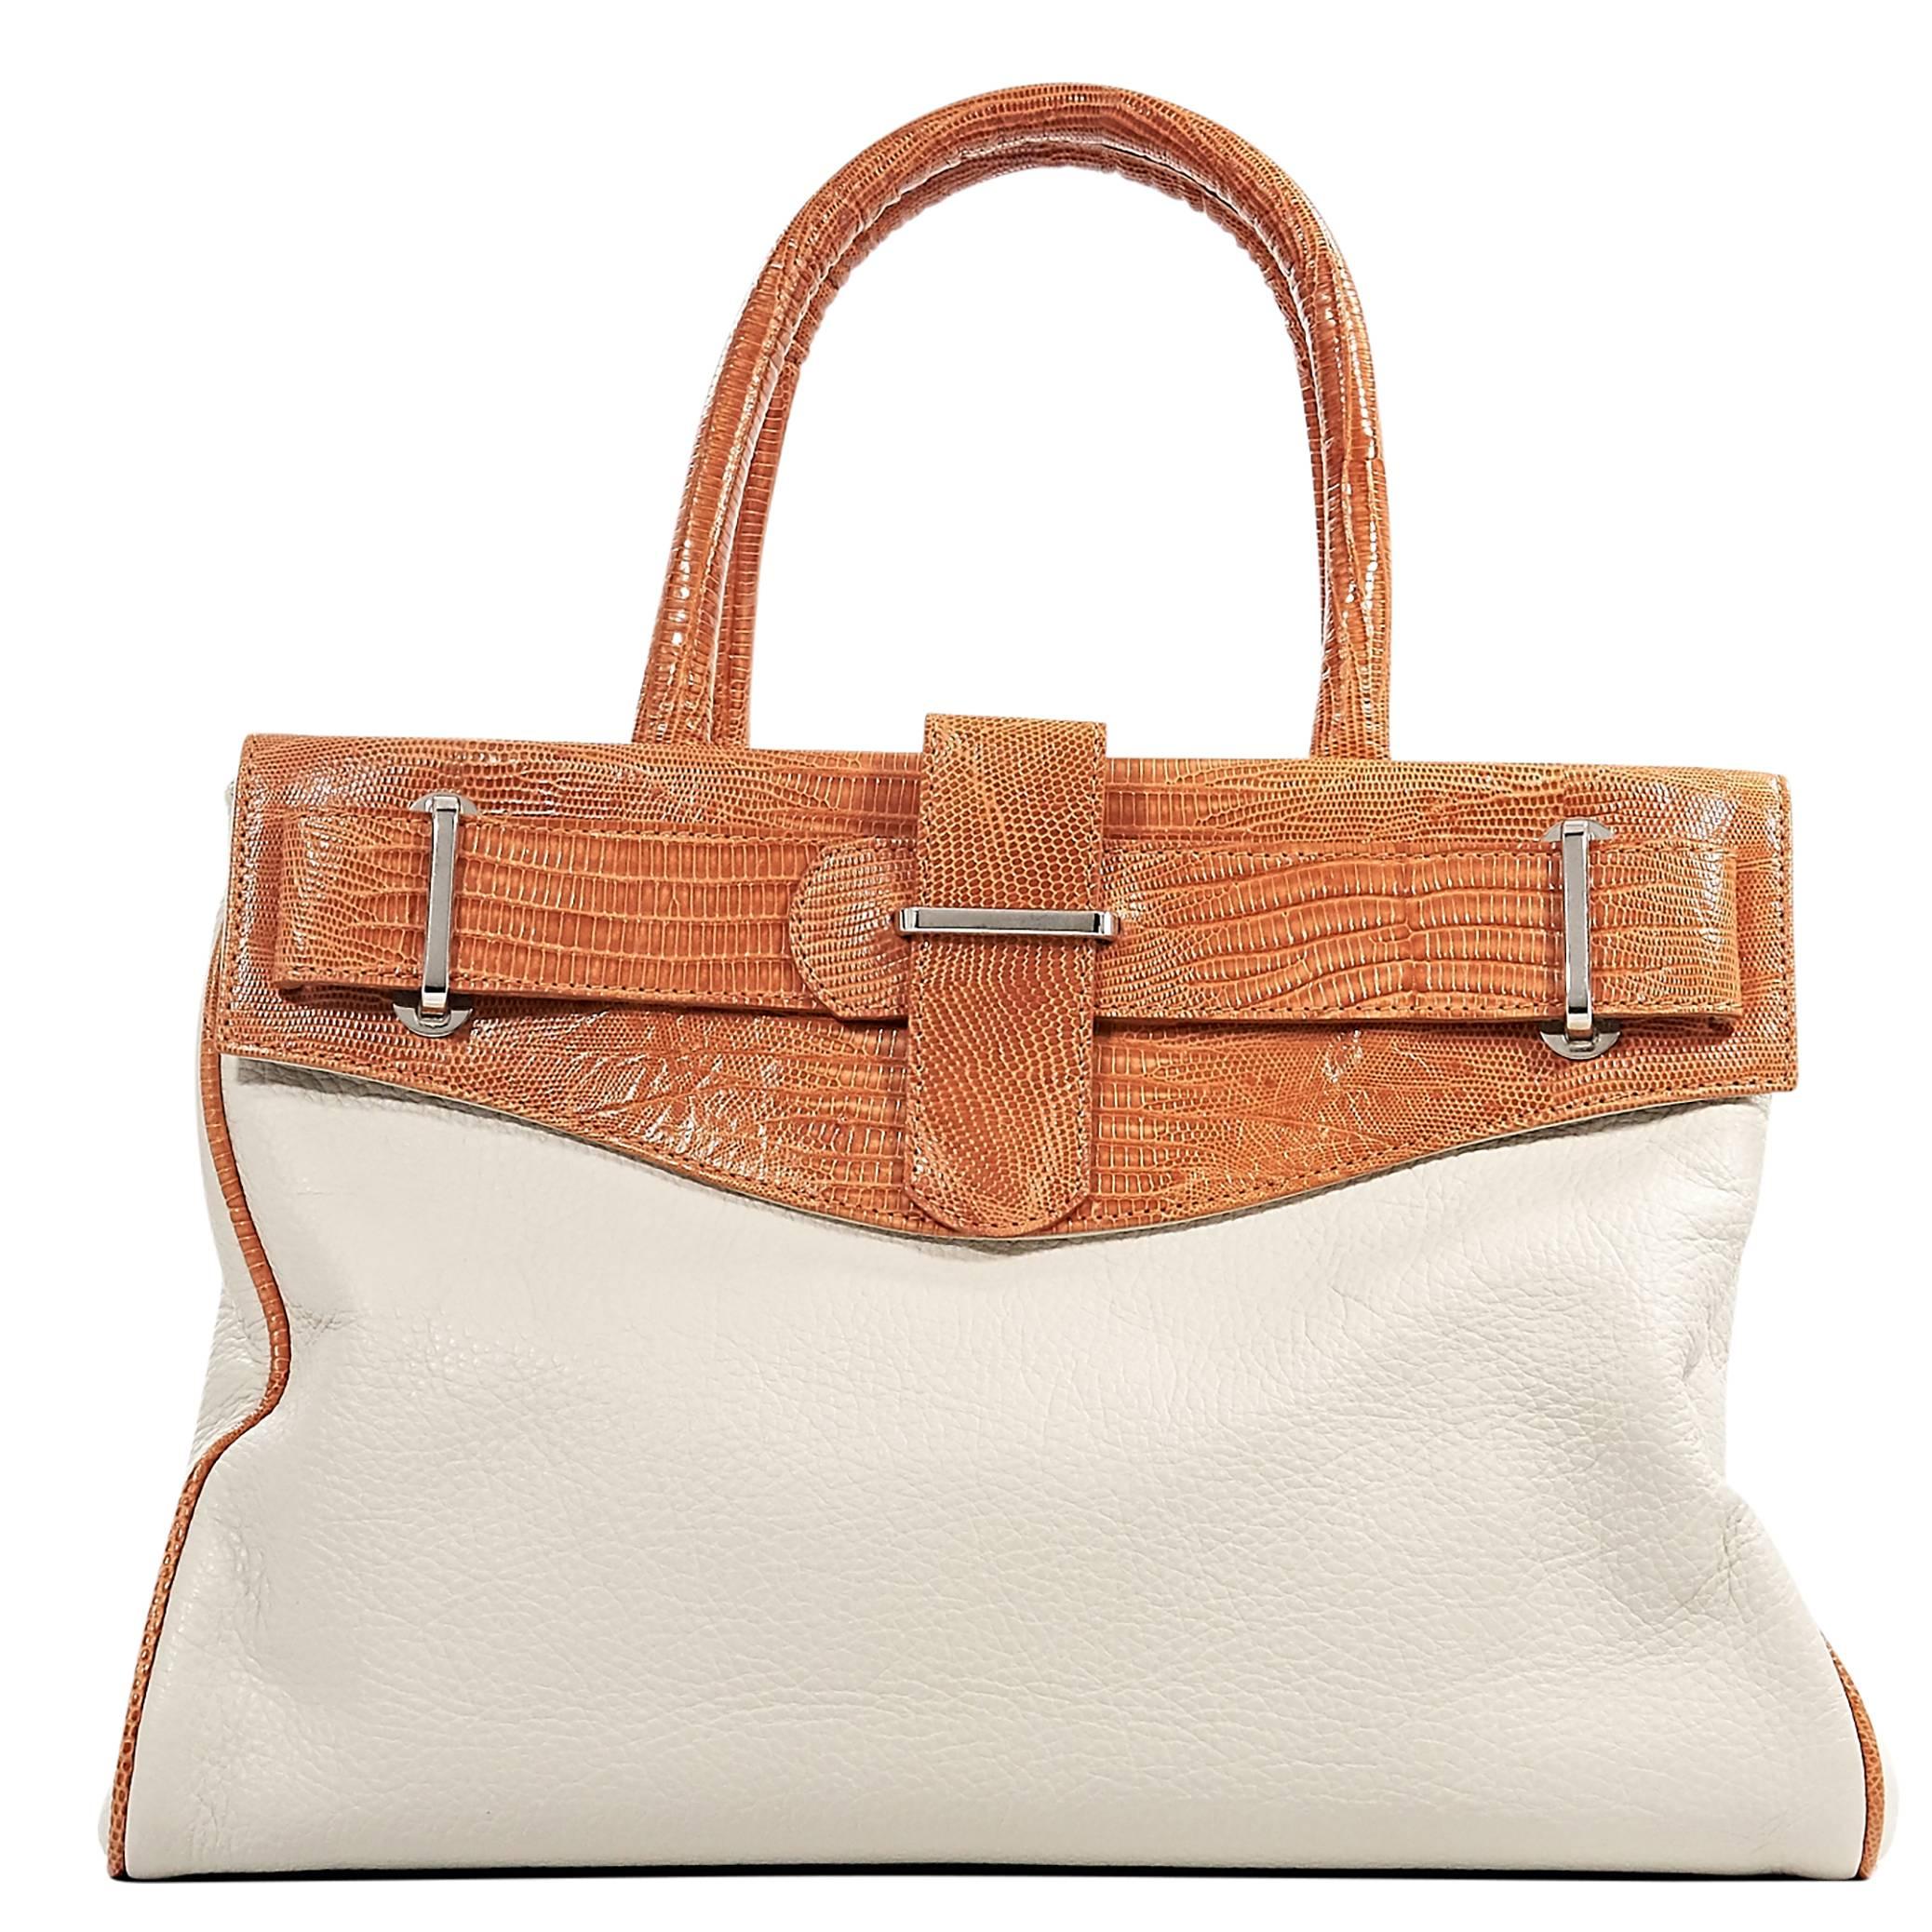 White & Orange Daniella Ortiz Tote Bag